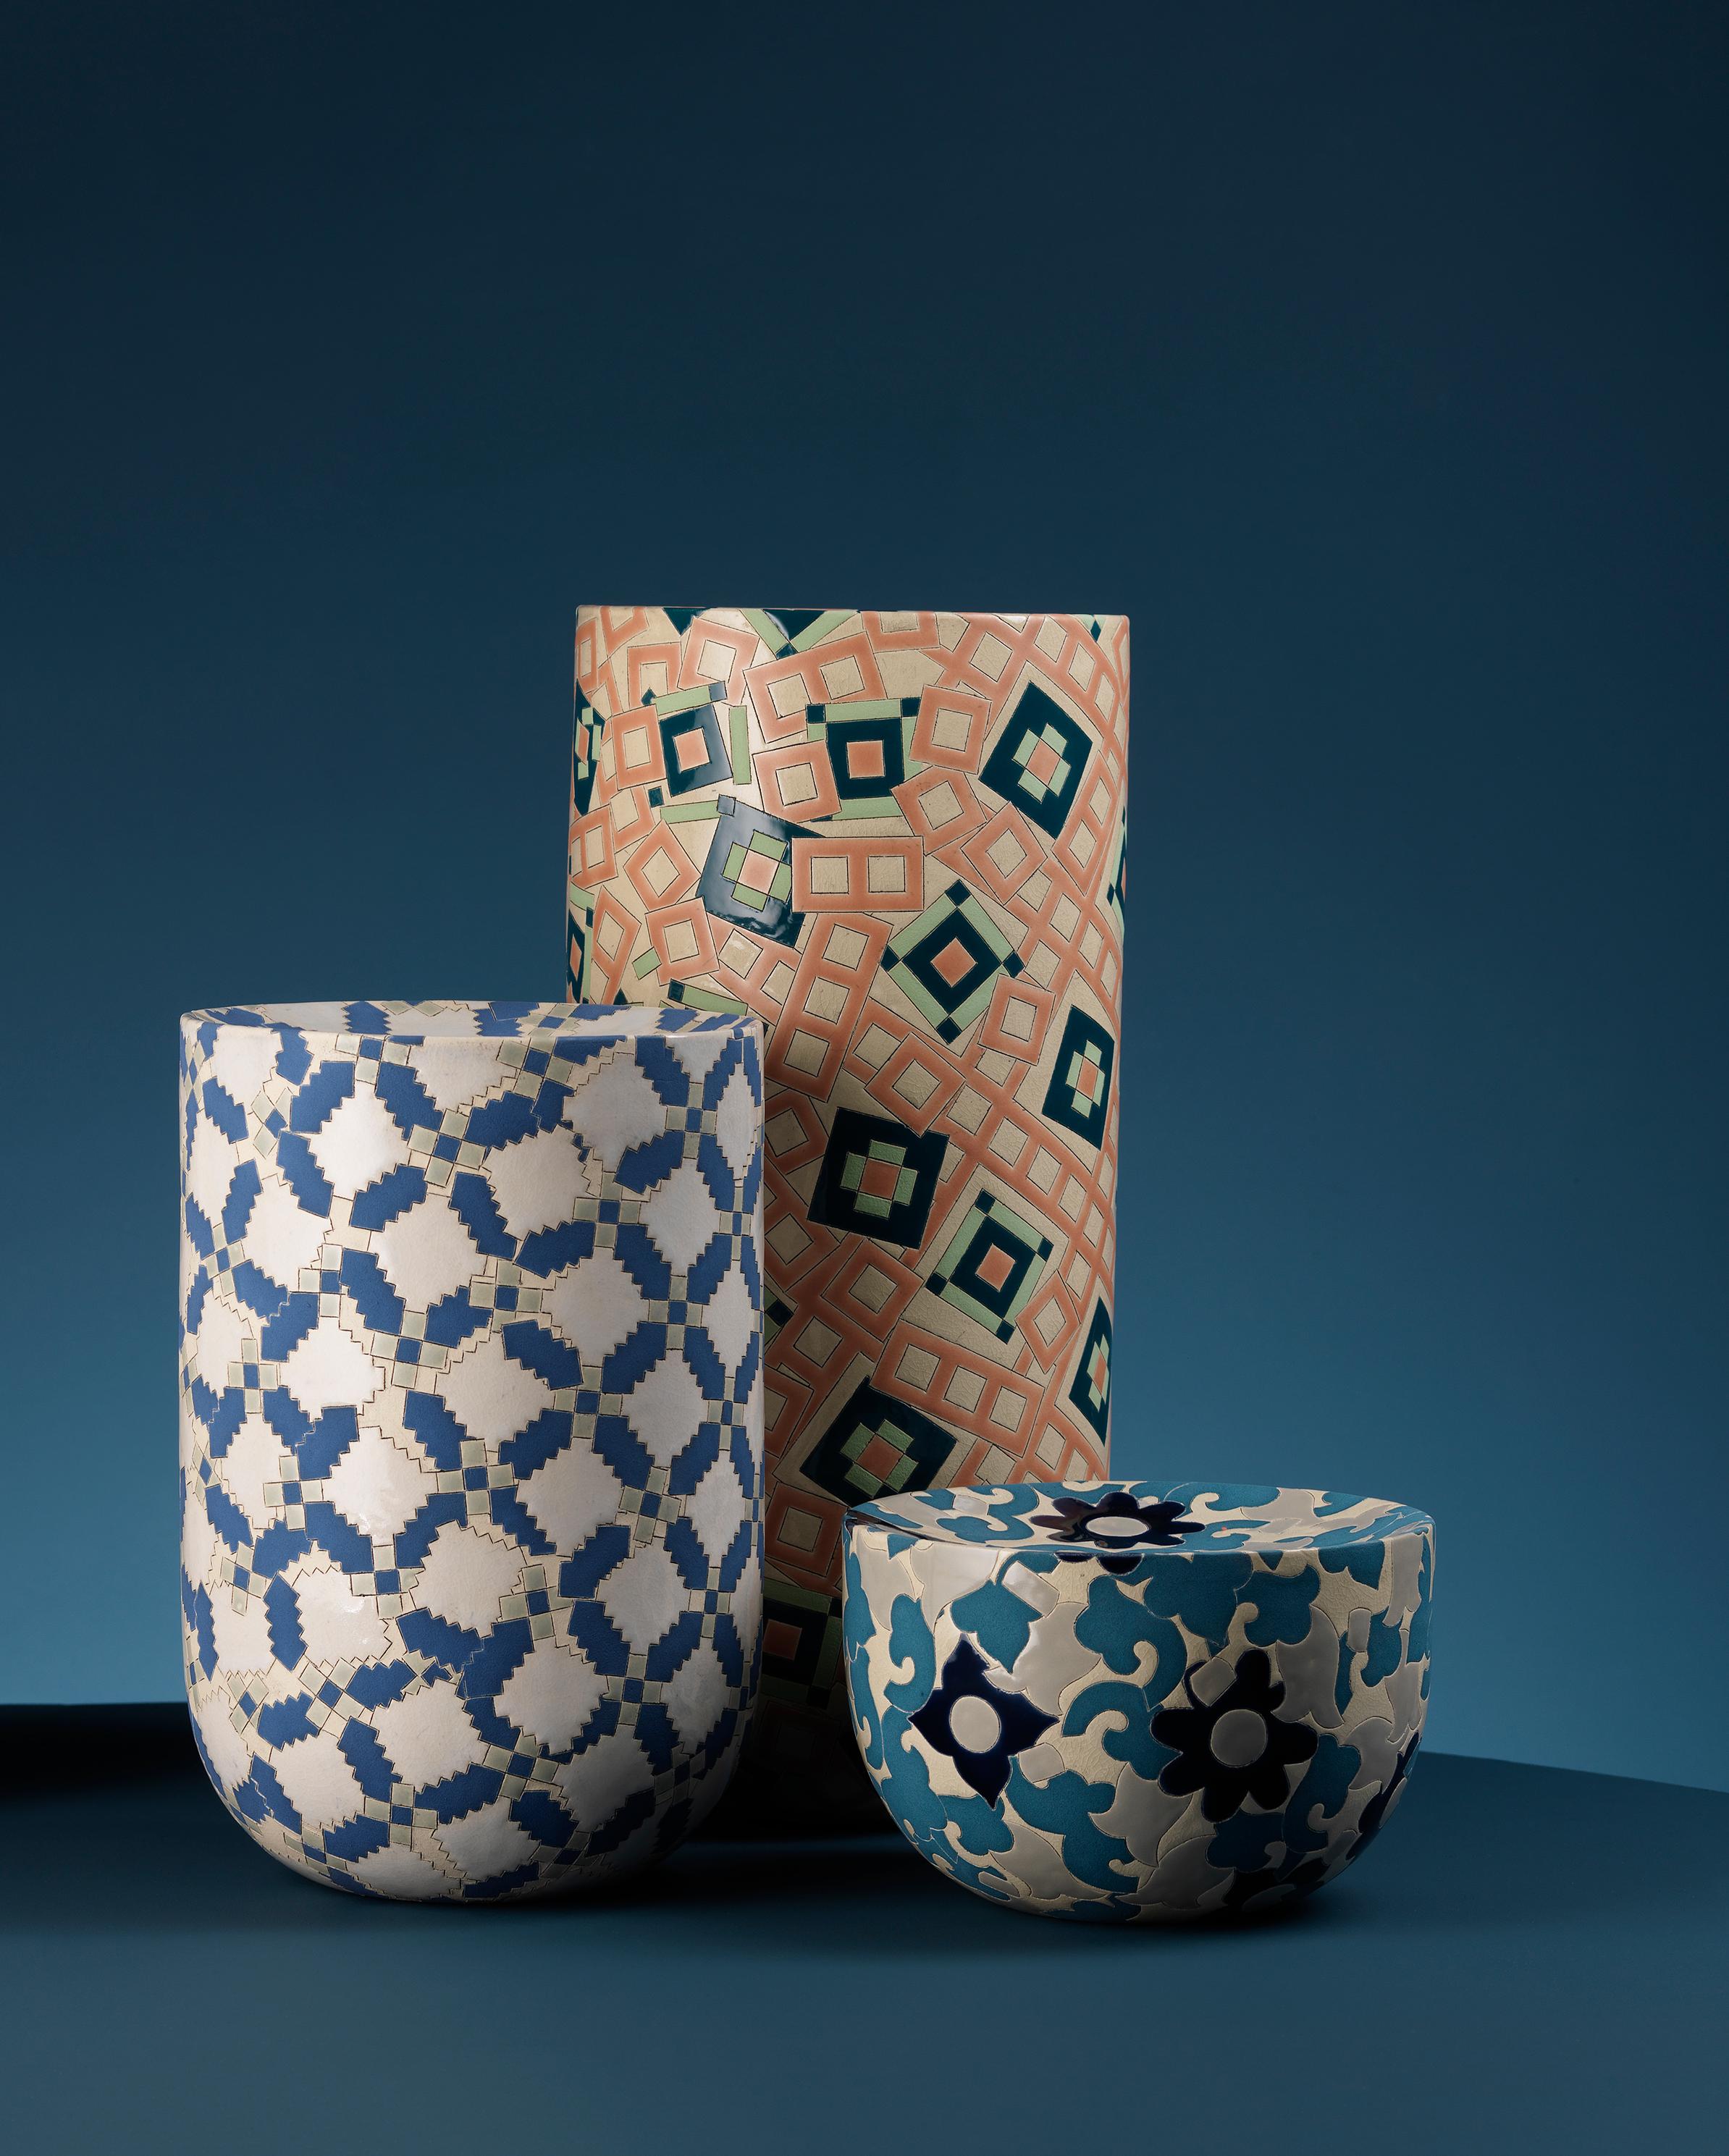 Die in Edinburgh ansässige Keramikkünstlerin Frances Priest erforscht die Kulturgeschichte des Ornaments durch die Schaffung von kunstvoll gefertigten Keramikobjekten und ist in Sammlungen von internationaler Bedeutung vertreten.

Diese Vasenform